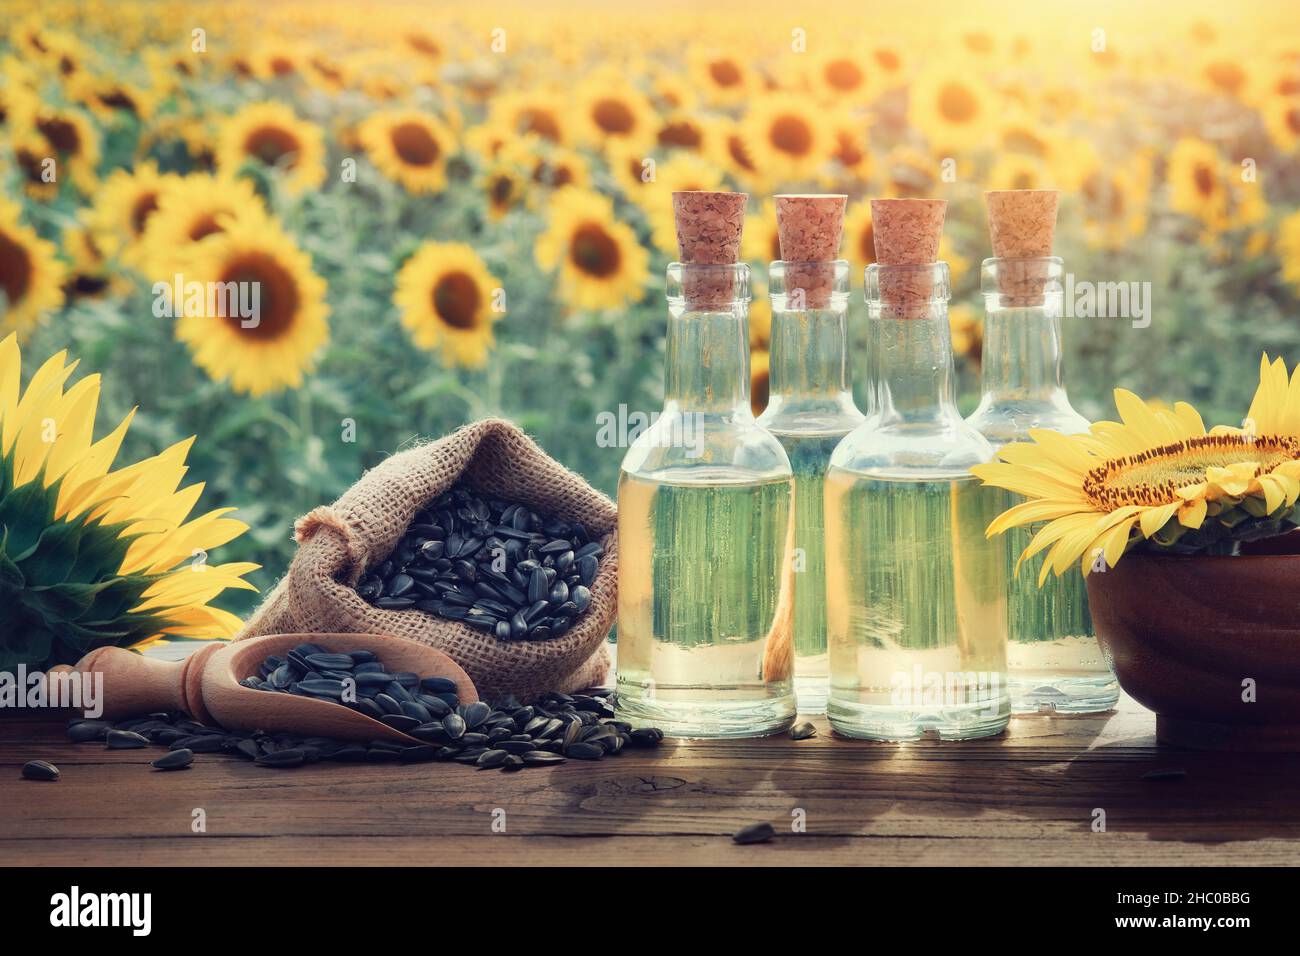 Drei Flaschen Sonnenblumenöl und Beutel mit schwarzen Sonnenblumenkernen, schöne gelbe Sonnenblumenkerne auf dem Hintergrund. Stockfoto